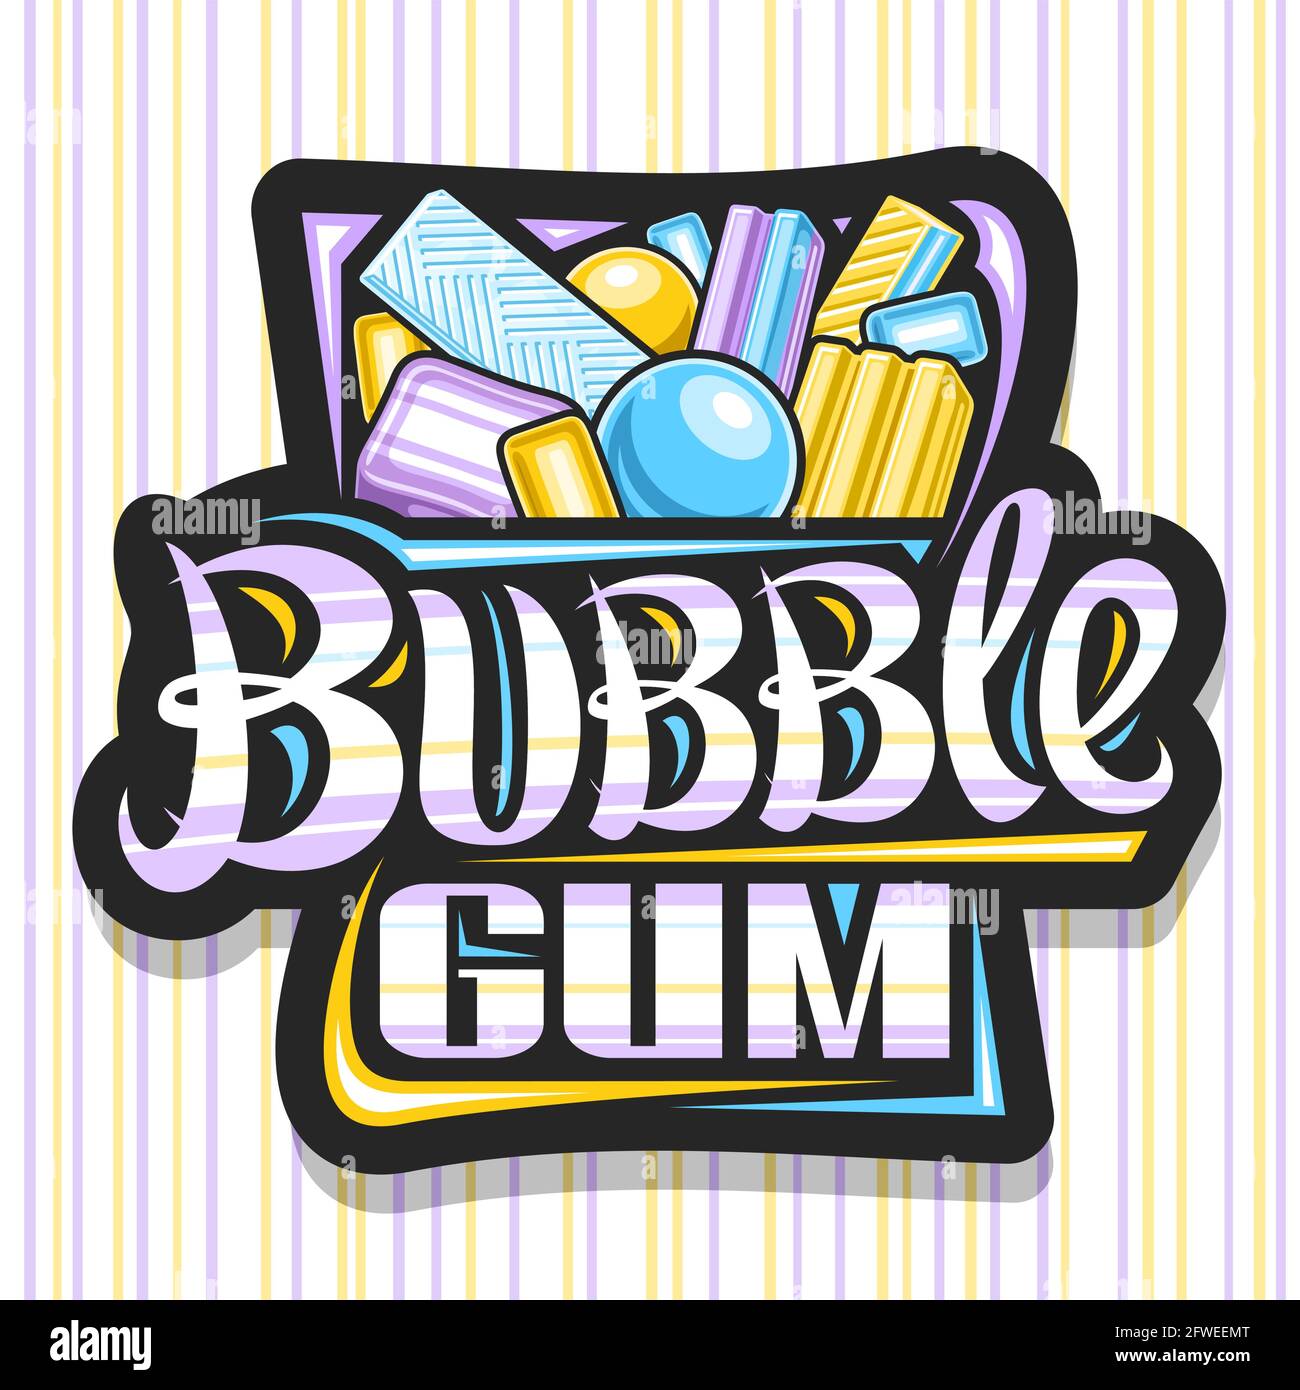 Vektor-Logo für Bubble Gum, schwarzes dekoratives Schild mit Illustration von verschiedenen niedlichen Bubblegums und gelben Bonbons, Poster mit einzigartigem Pinsel lett Stock Vektor